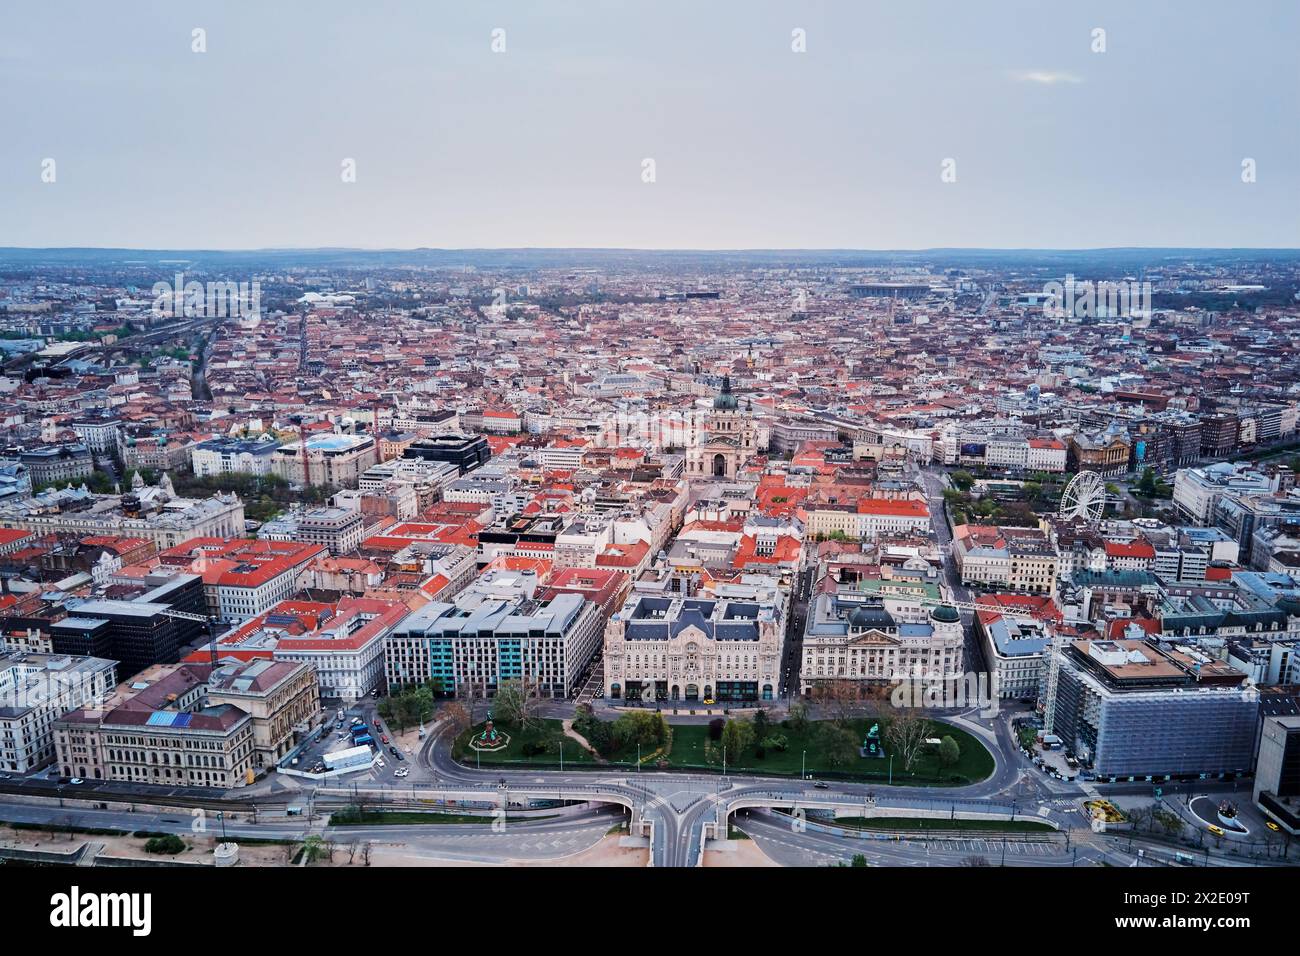 Panoramablick auf die Skyline der Dächer von Budapest. Blick aus der Vogelperspektive auf die Hauptstadt Ungarns mit historischen Gebäuden und berühmten Wahrzeichen Stockfoto